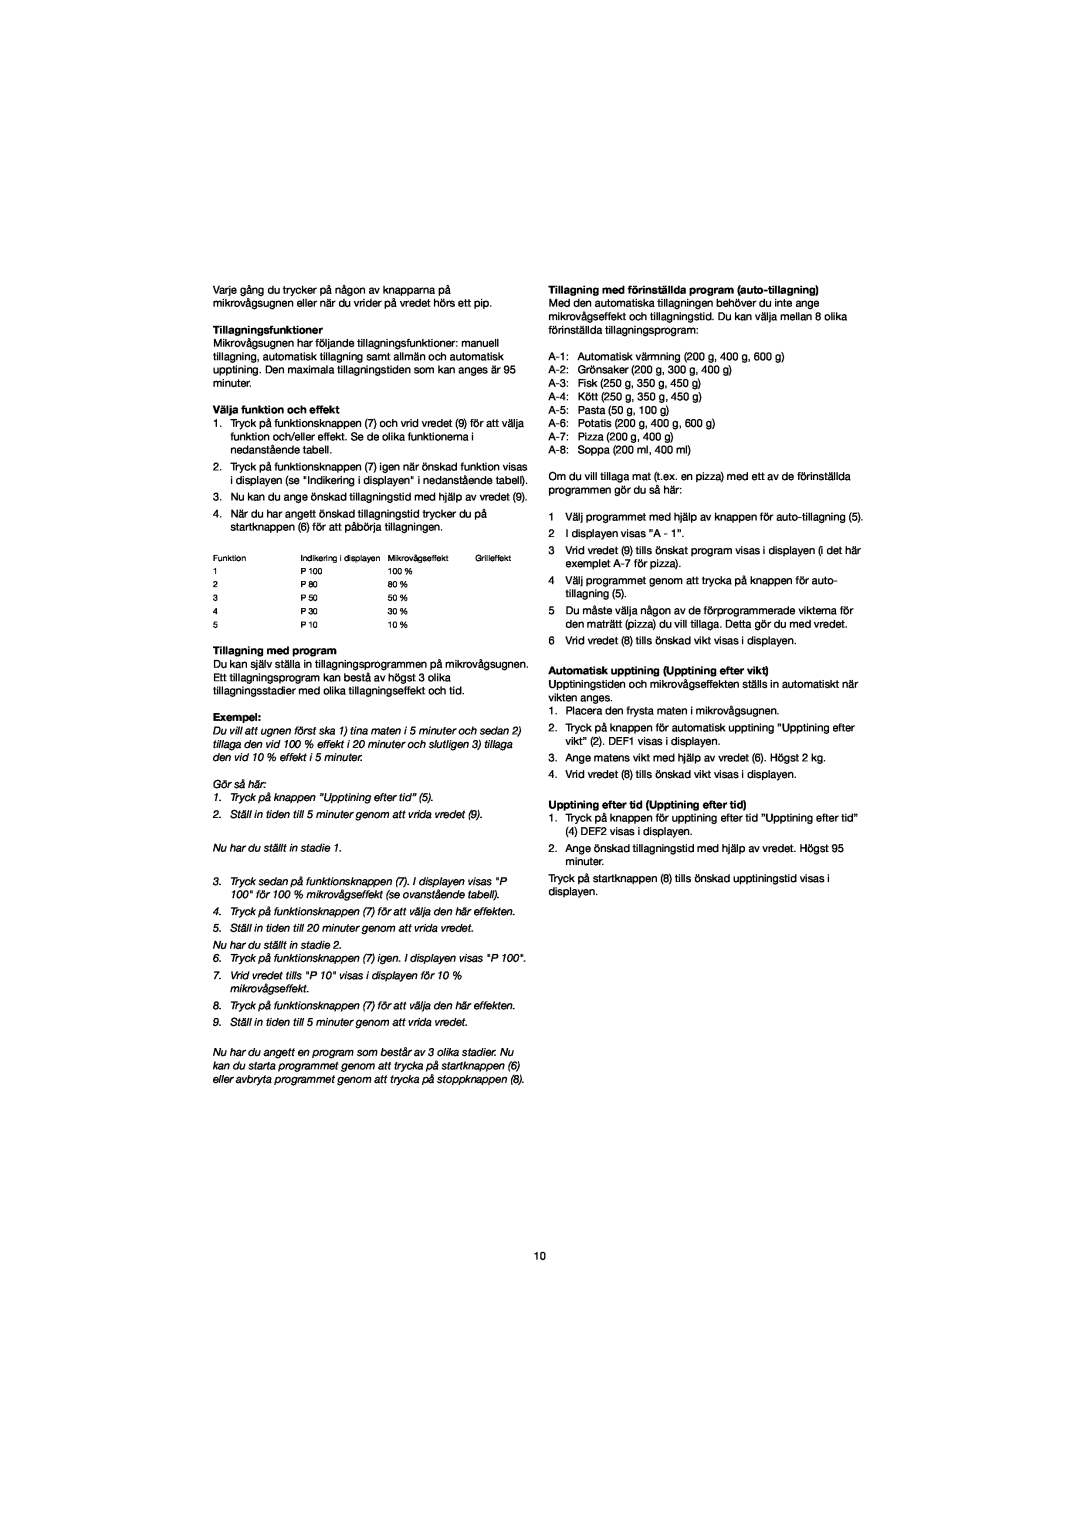 Melissa 753-094 manual Tillagningsfunktioner, Välja funktion och effekt, Tillagning med program, Exempel 